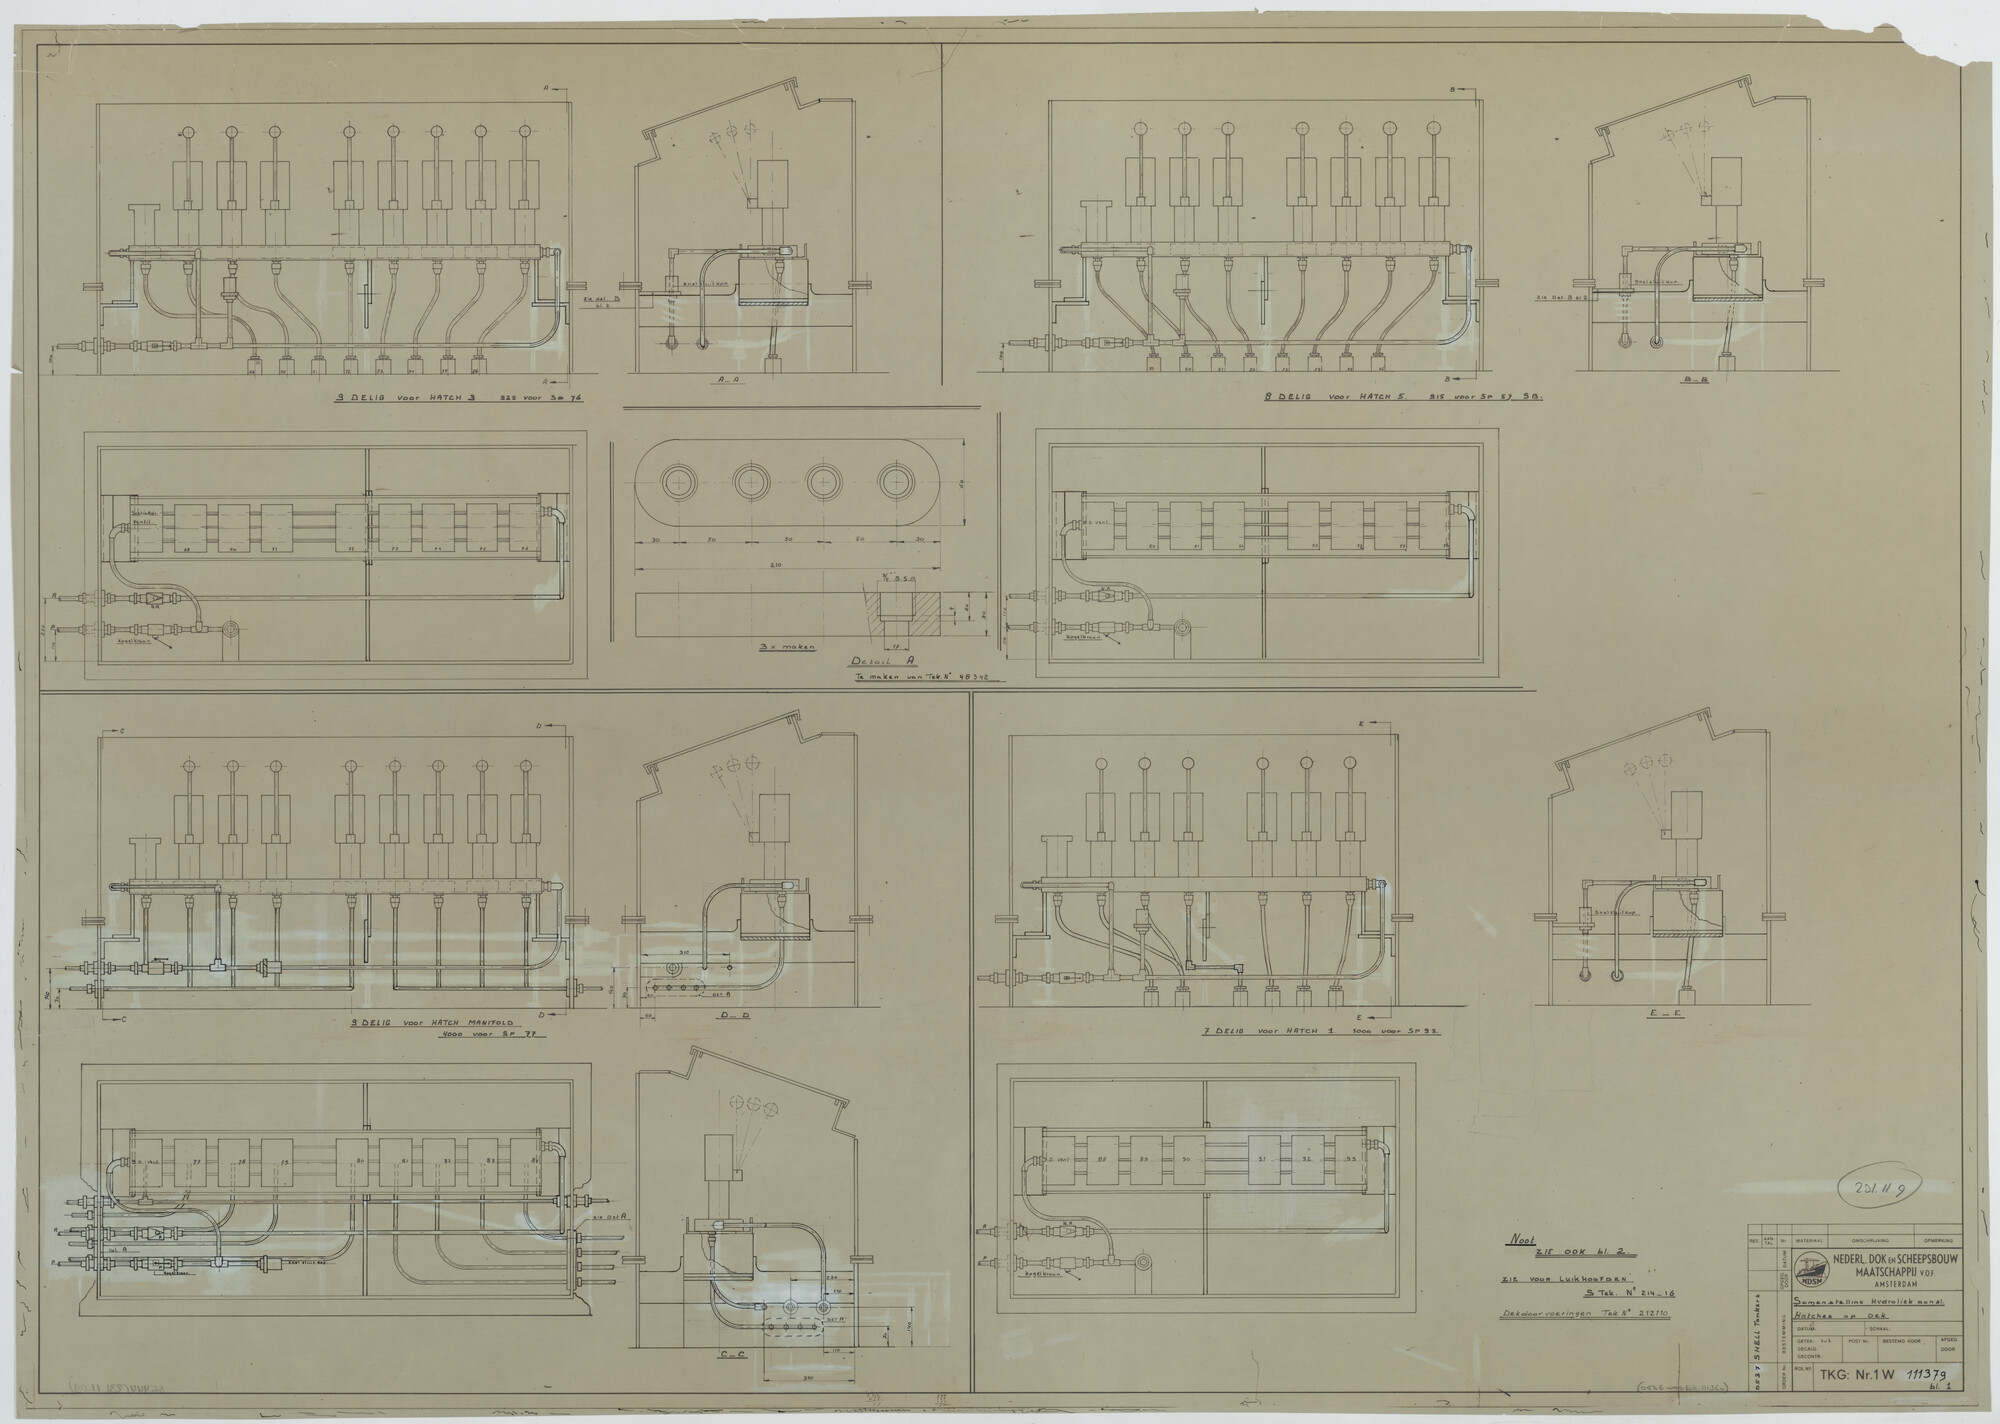 S.5444(231.11.9); Samenstelling hydraulische aansluiting luikhoofden op dek van de mammoettankers Melania, Mysella en Marticia; technische tekening